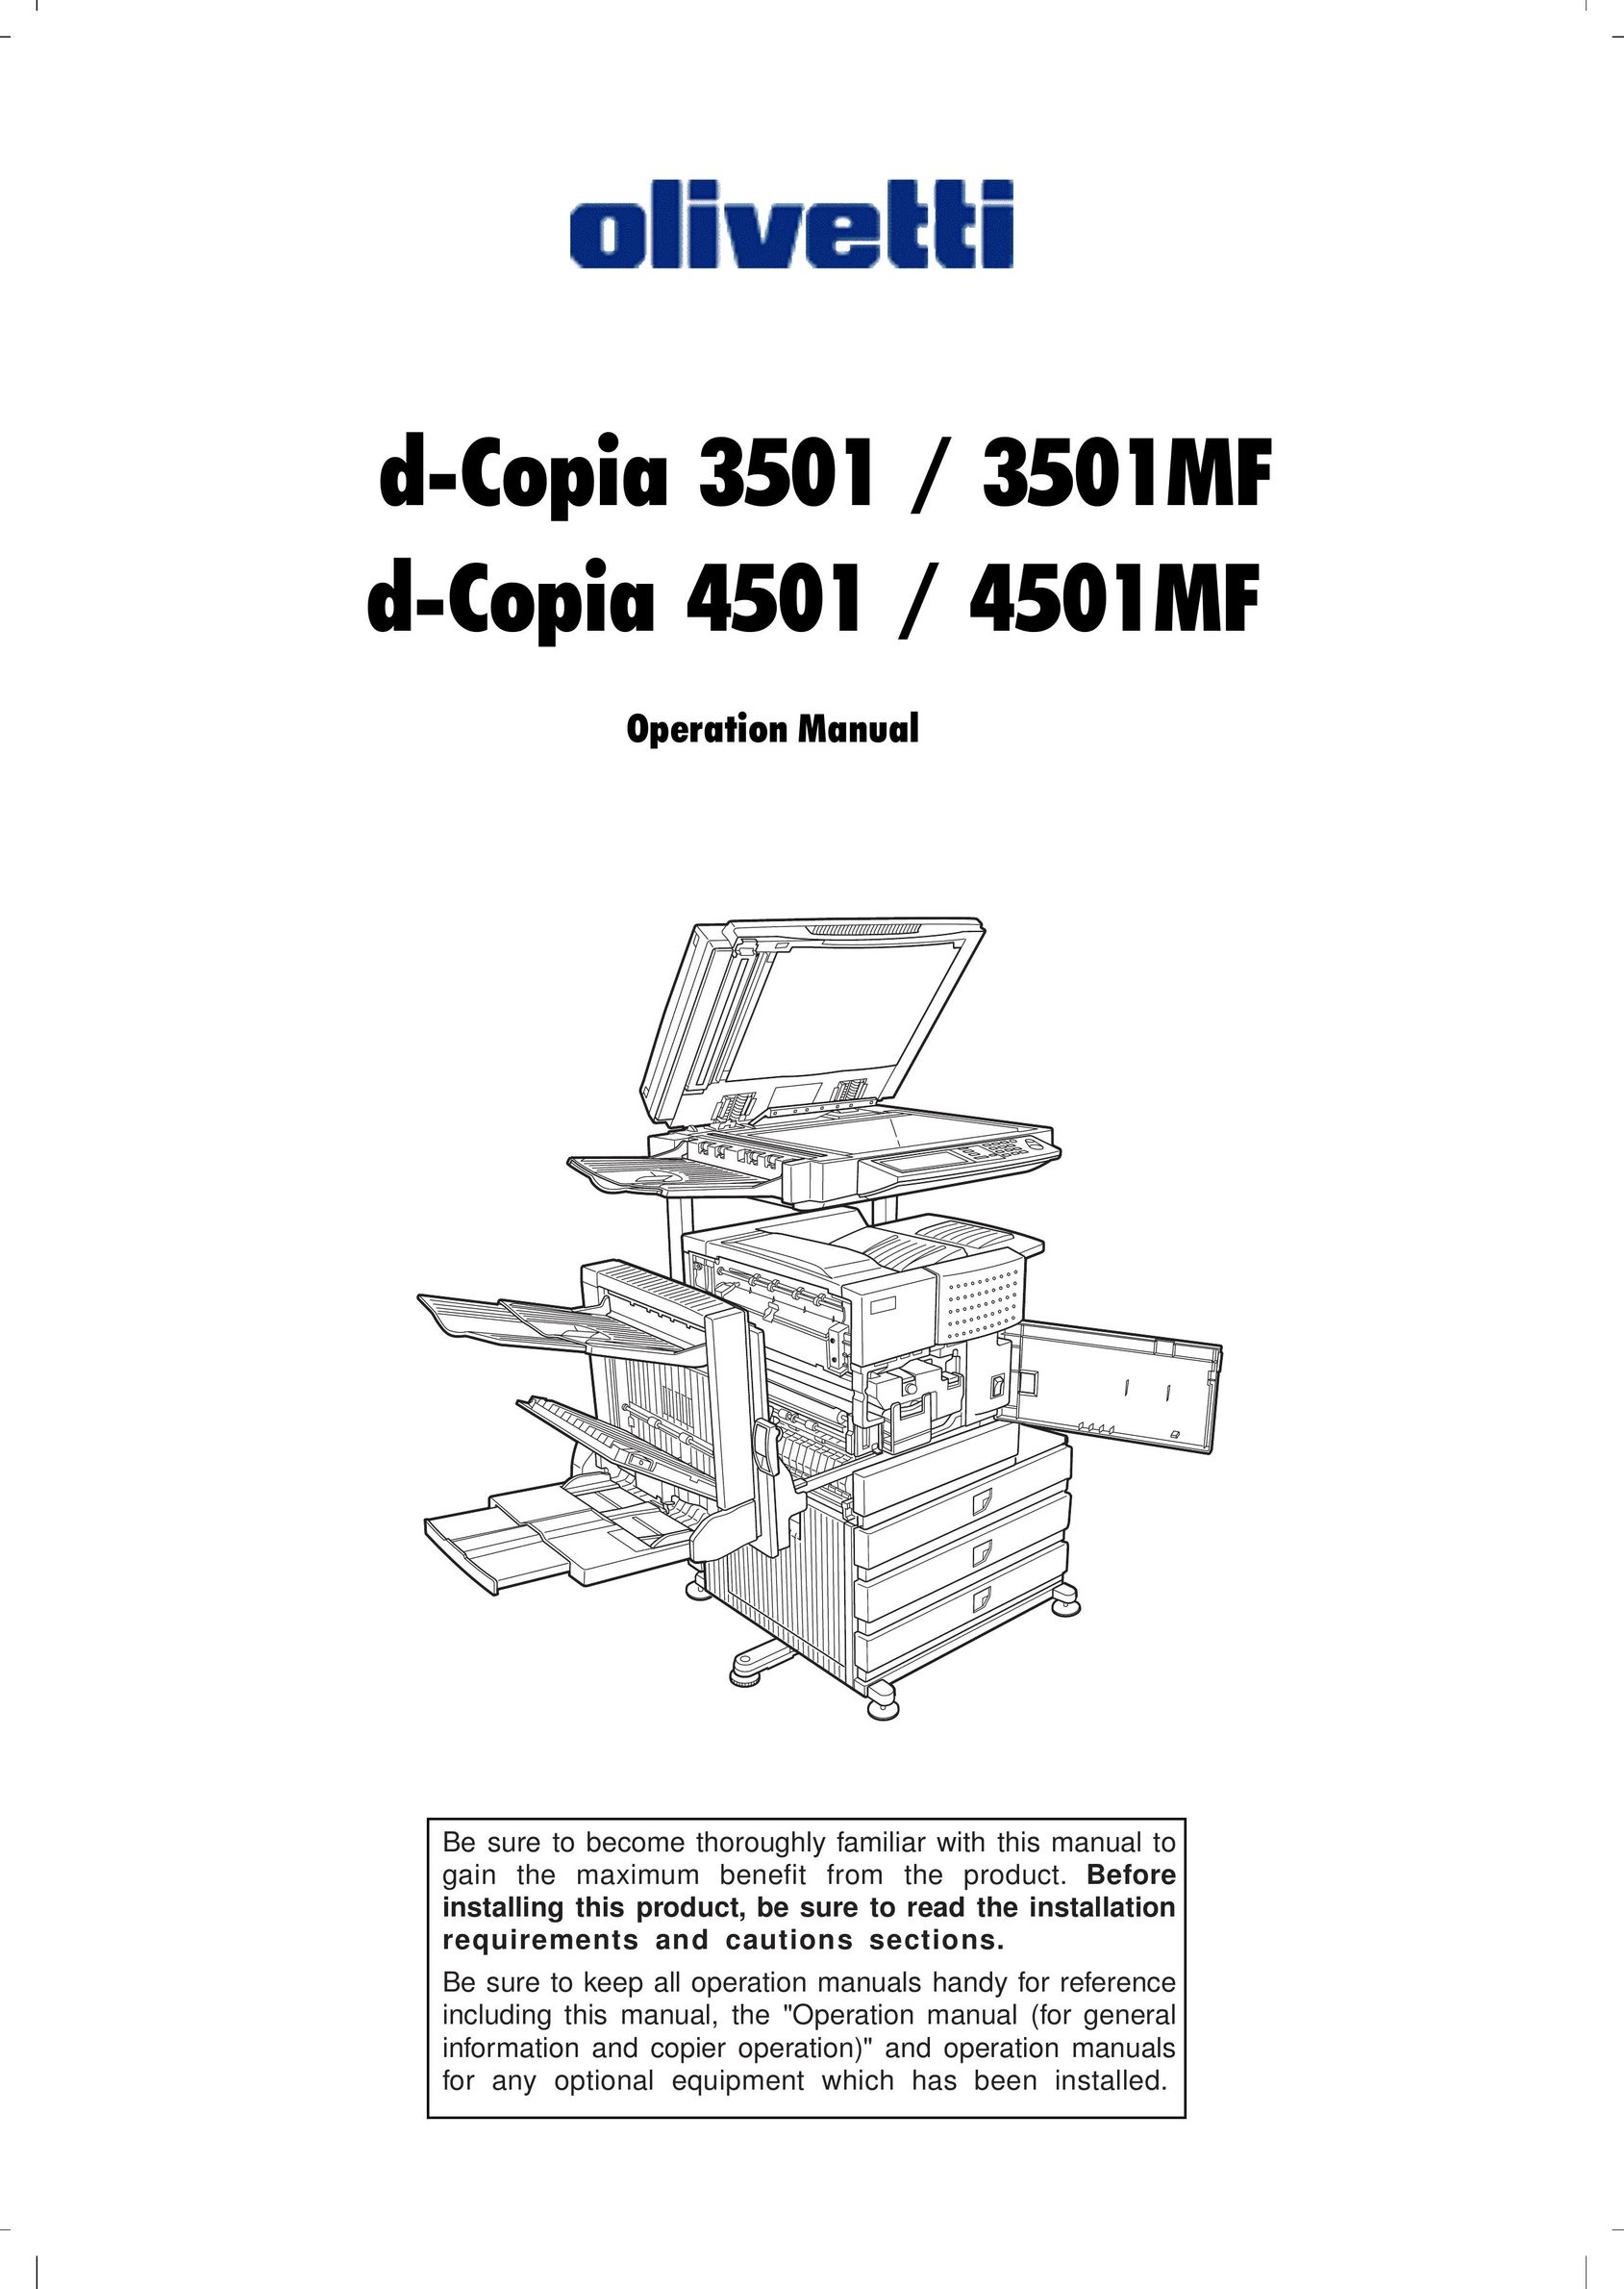 Olivetti 4501MF Copier User Manual